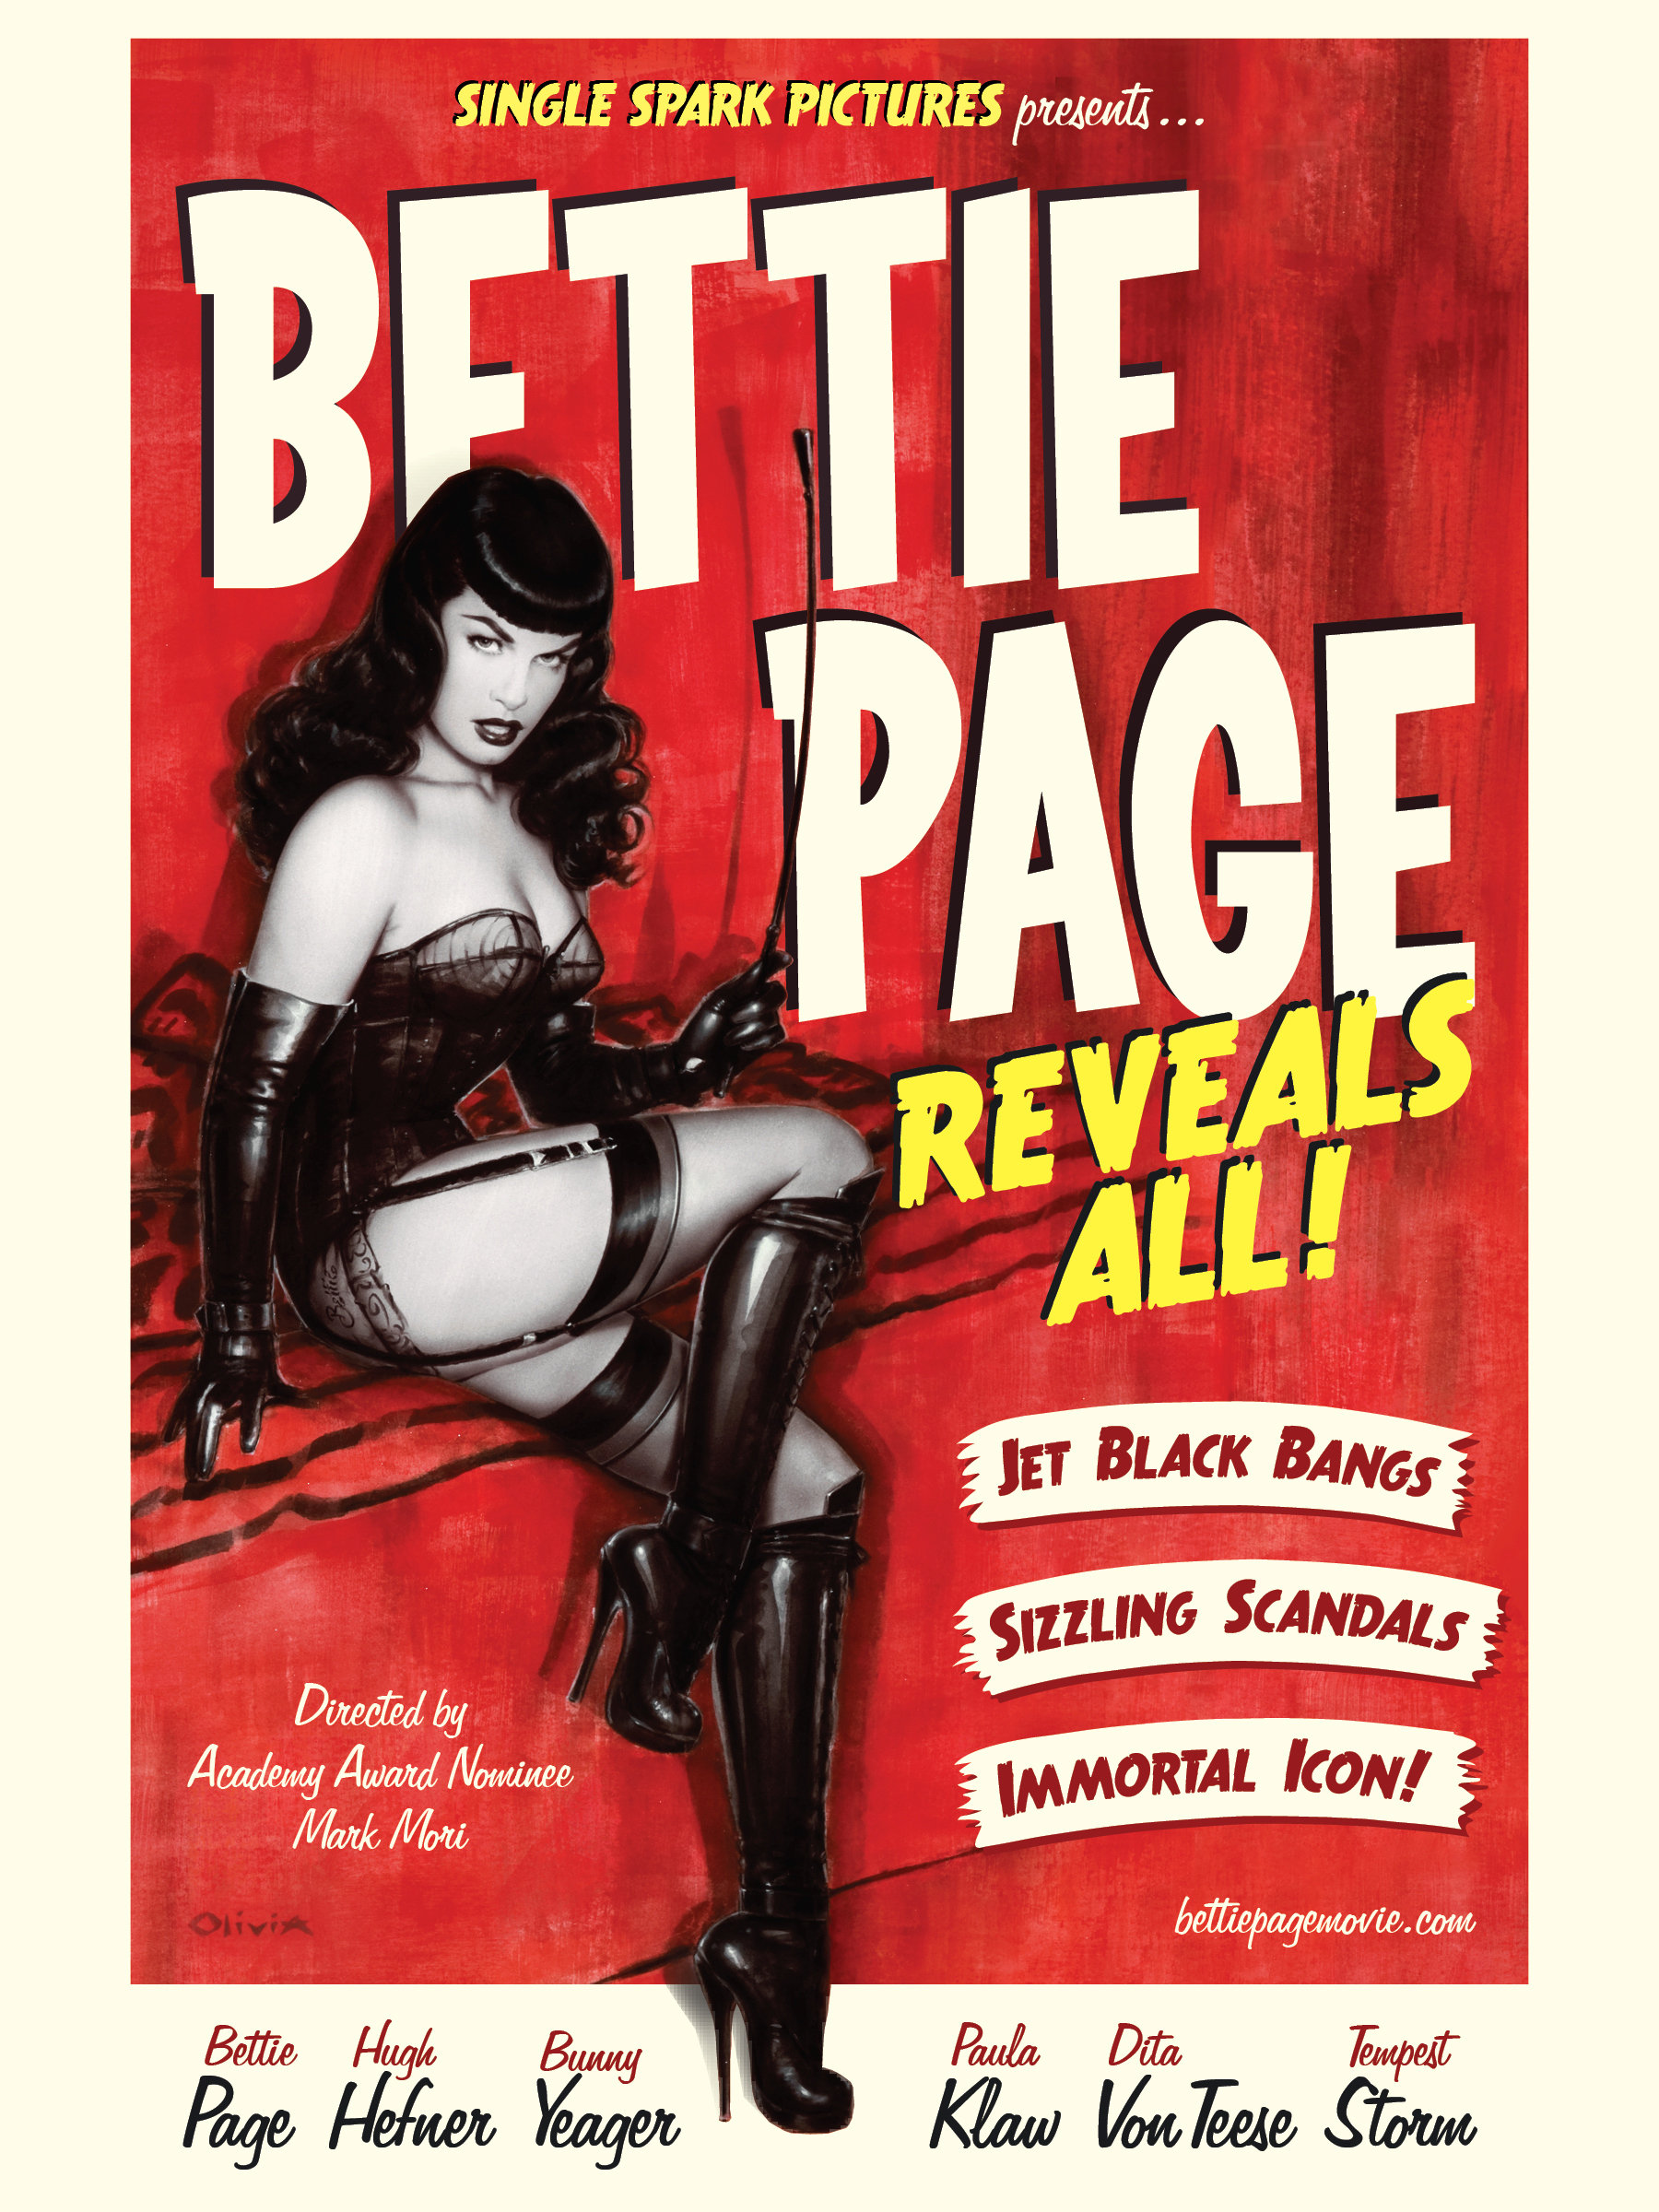 Nonton film Bettie Page Reveals All layarkaca21 indoxx1 ganool online streaming terbaru